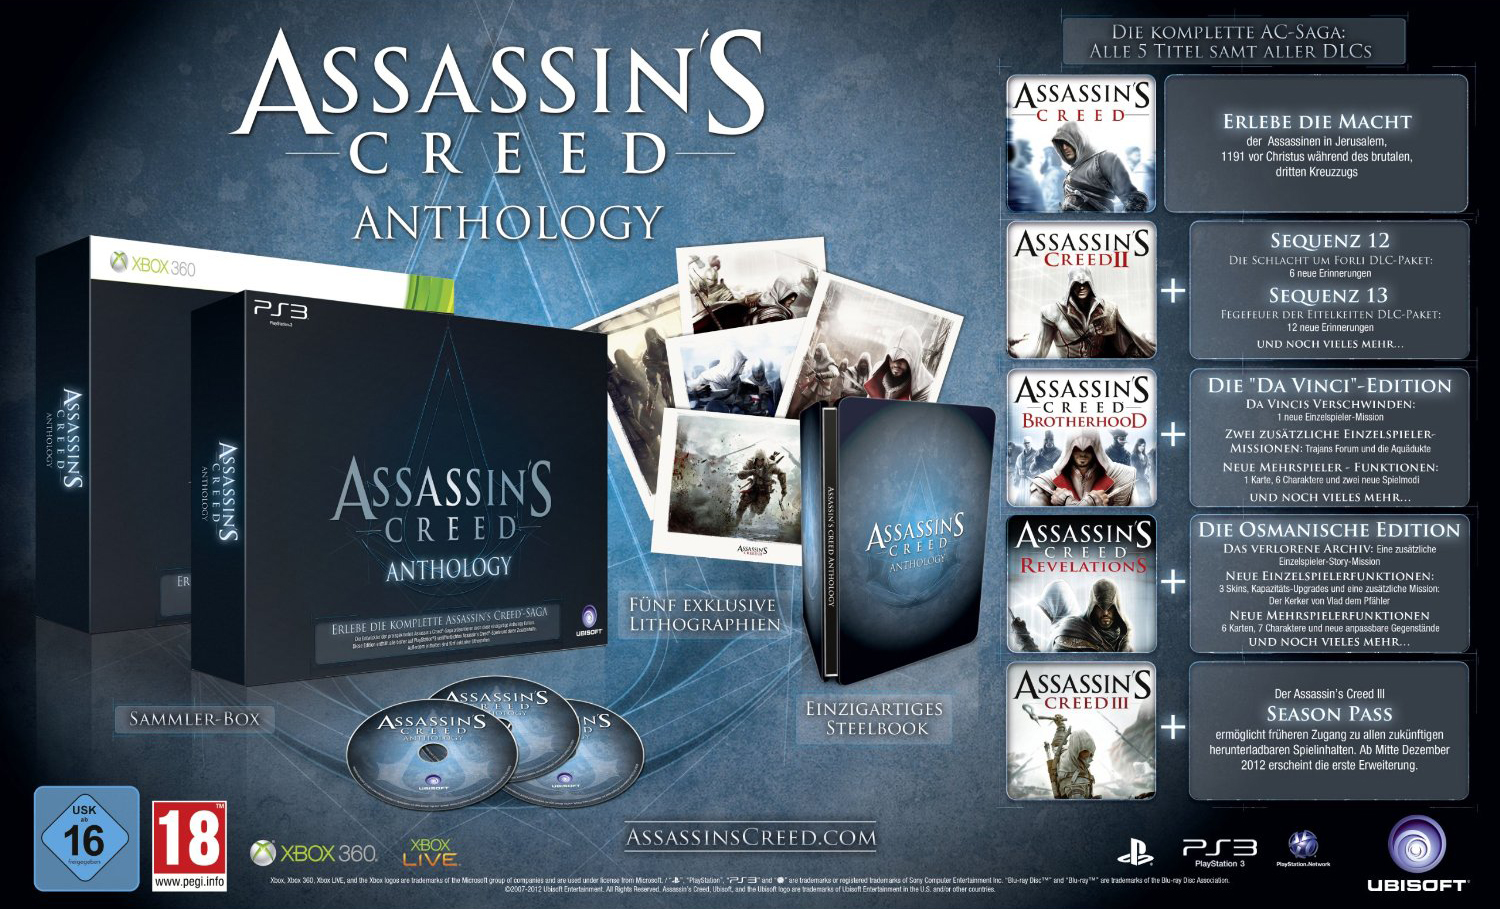 Assassins Creed Anthologie - Assassins Creed Anthologie: Ubisoft kündigt Collection an